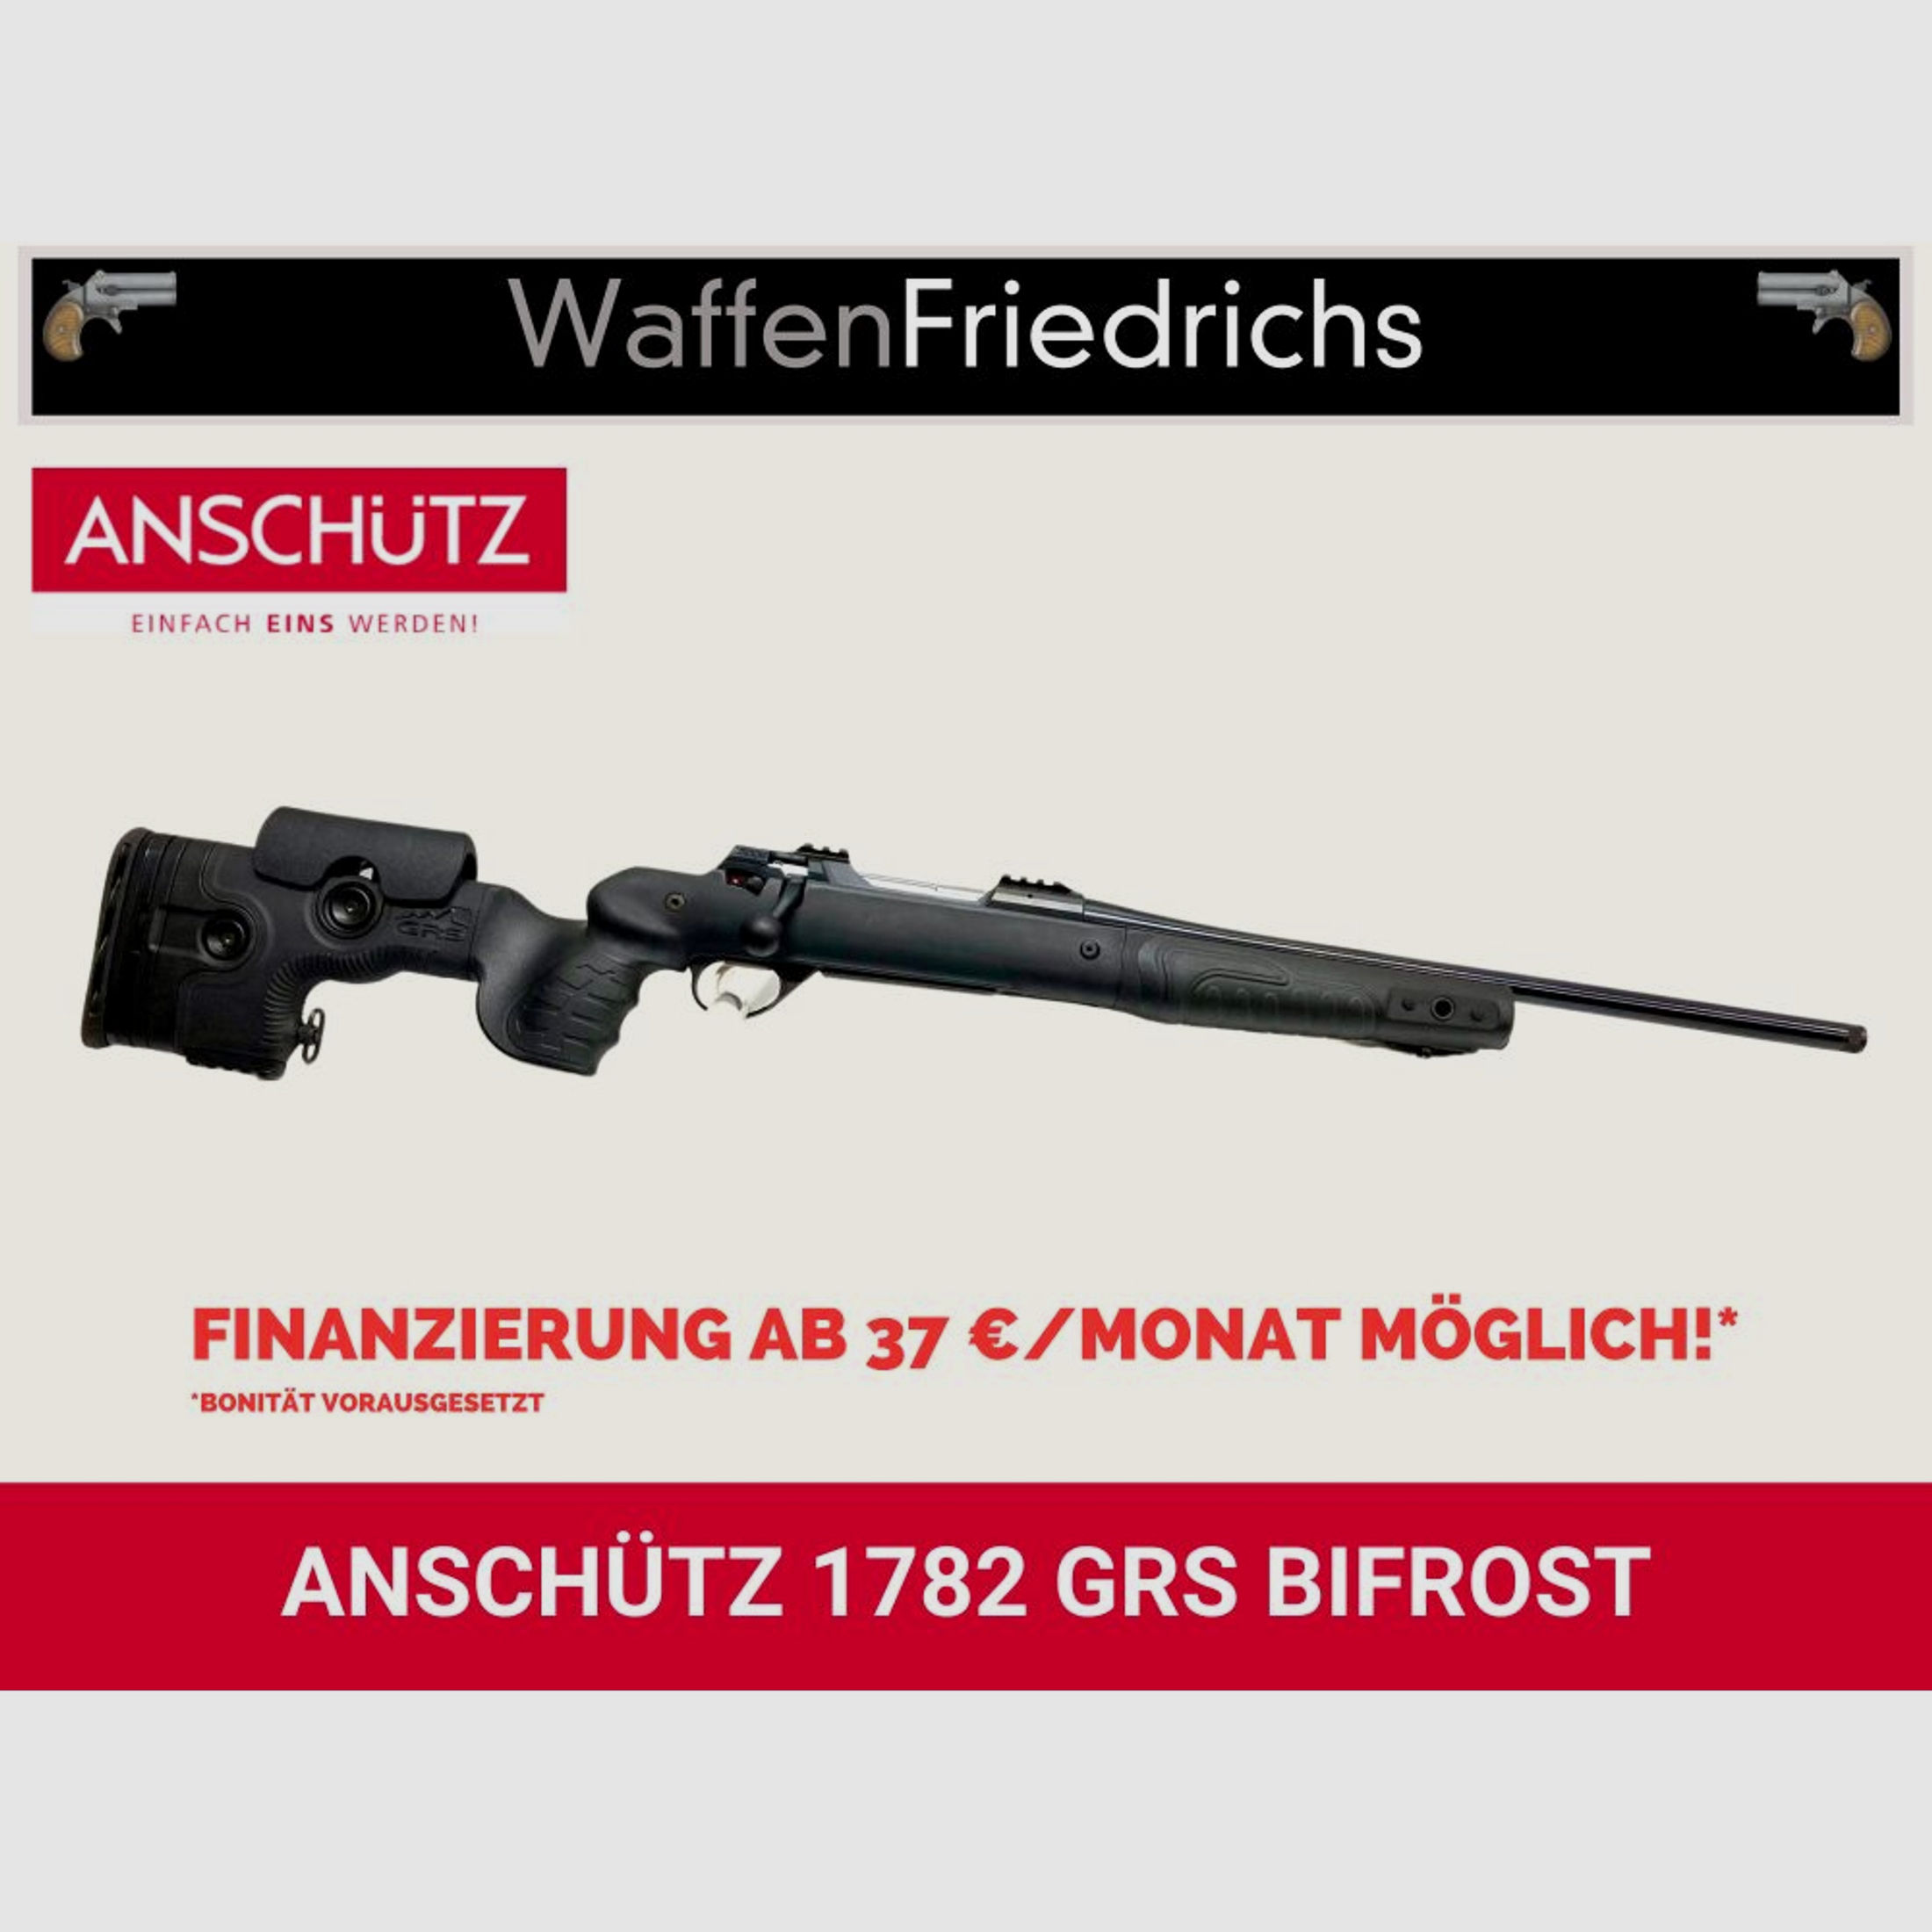 ANSCHÜTZ	 1782 GRS BIFROST - Waffen Friedrichs